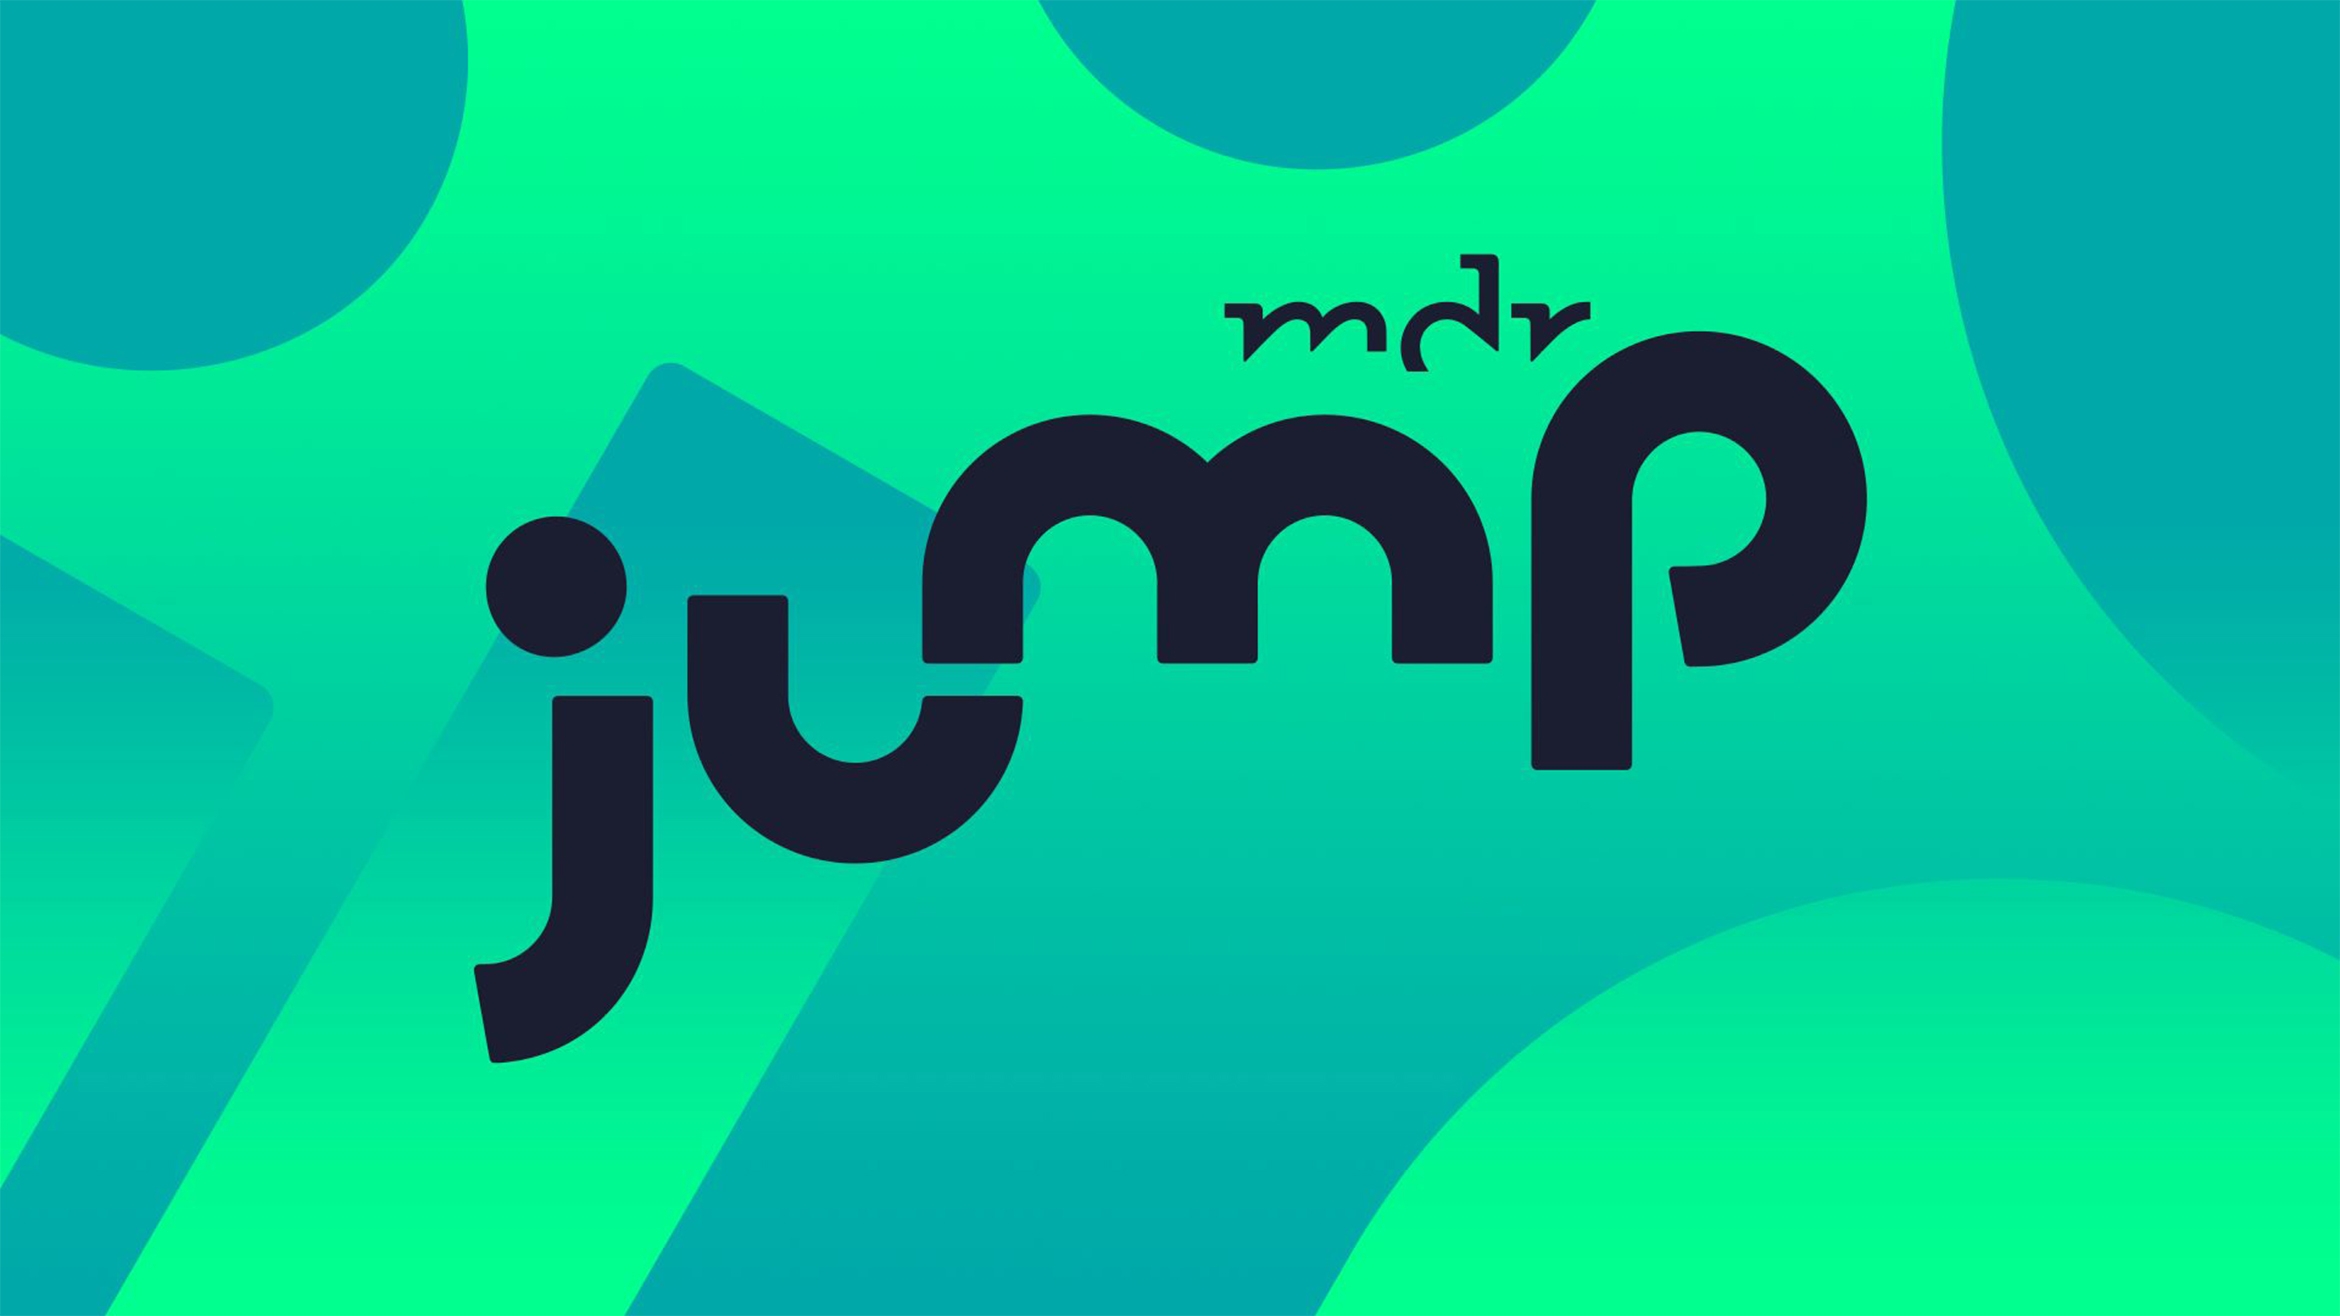 Der MDR launcht seine neue Marke "MDR Jump" -